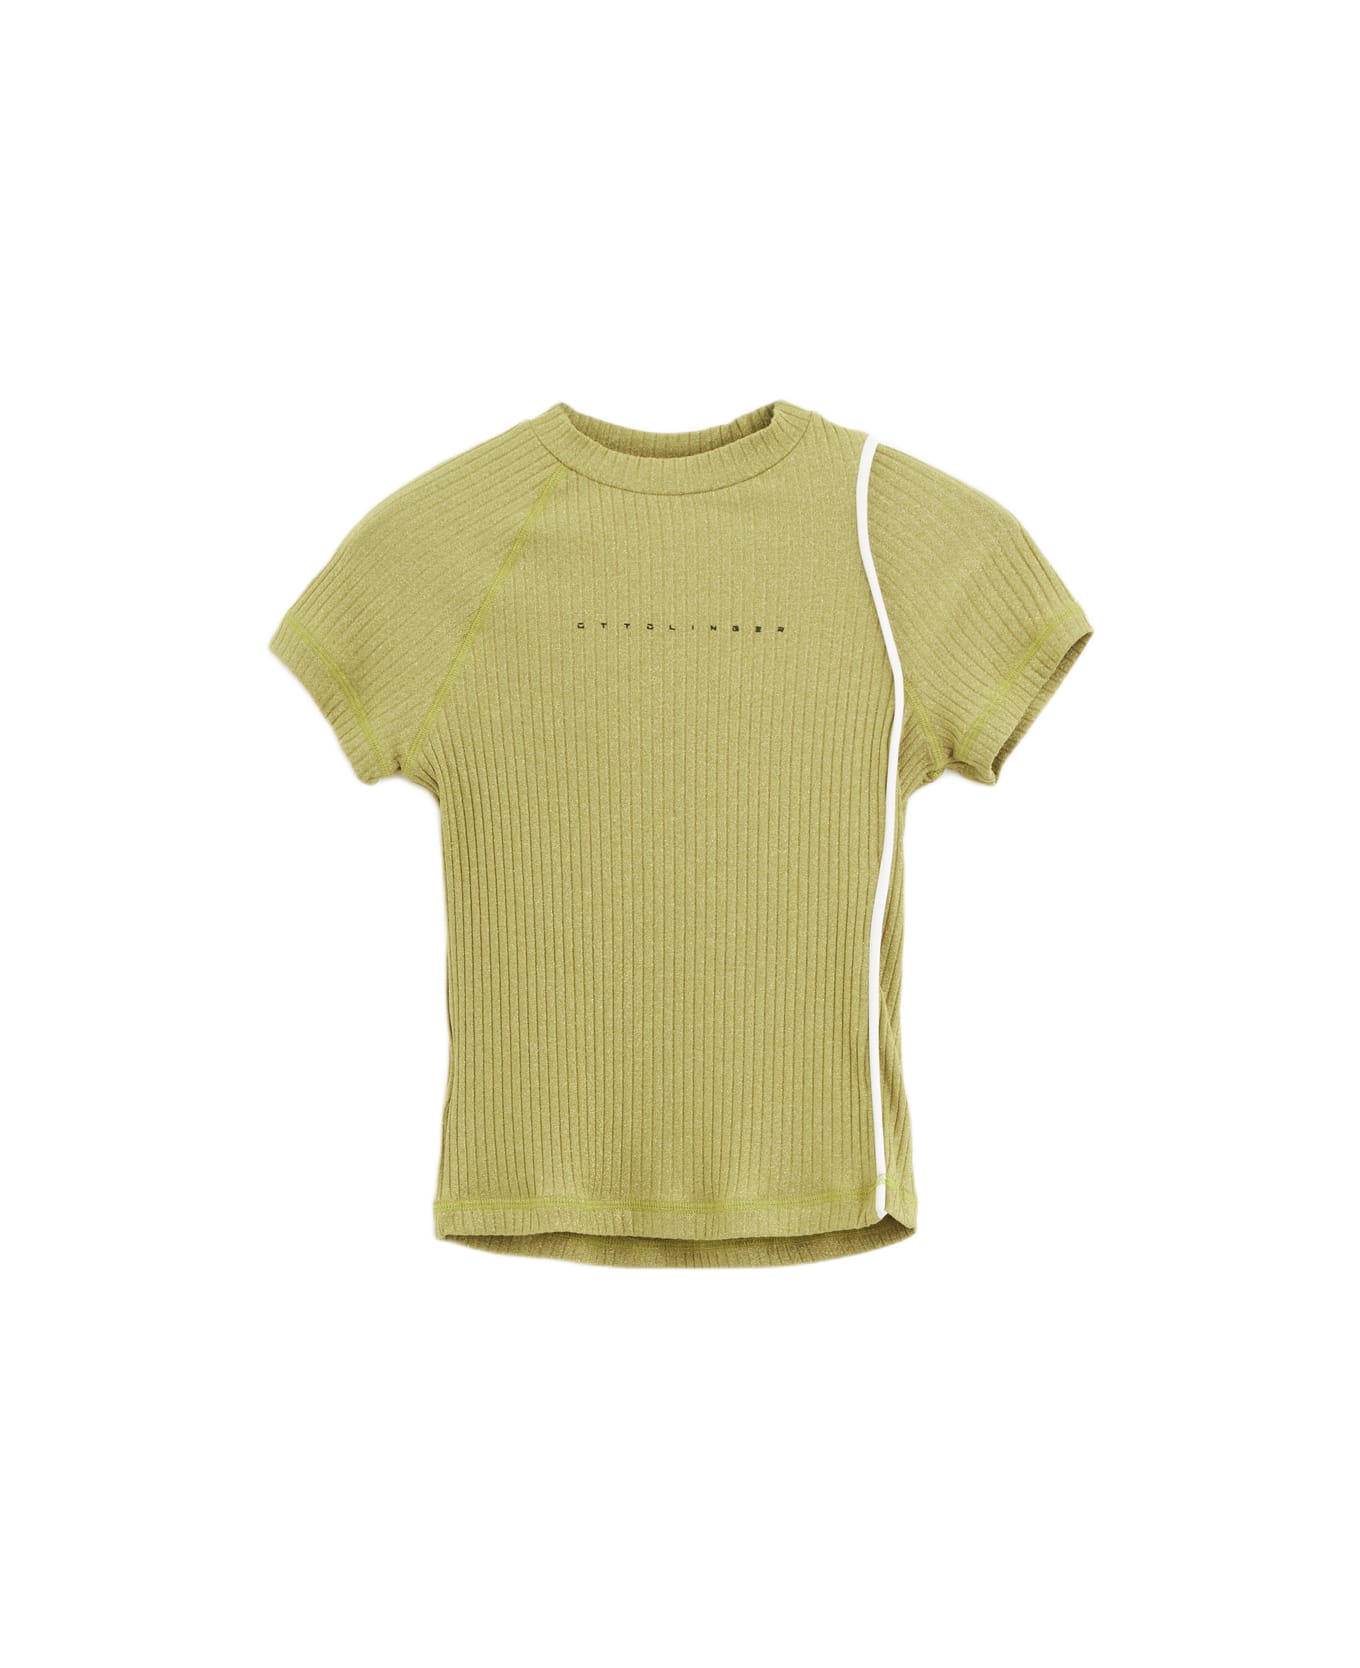 Ottolinger Lurex T-shirt T-shirt - gold